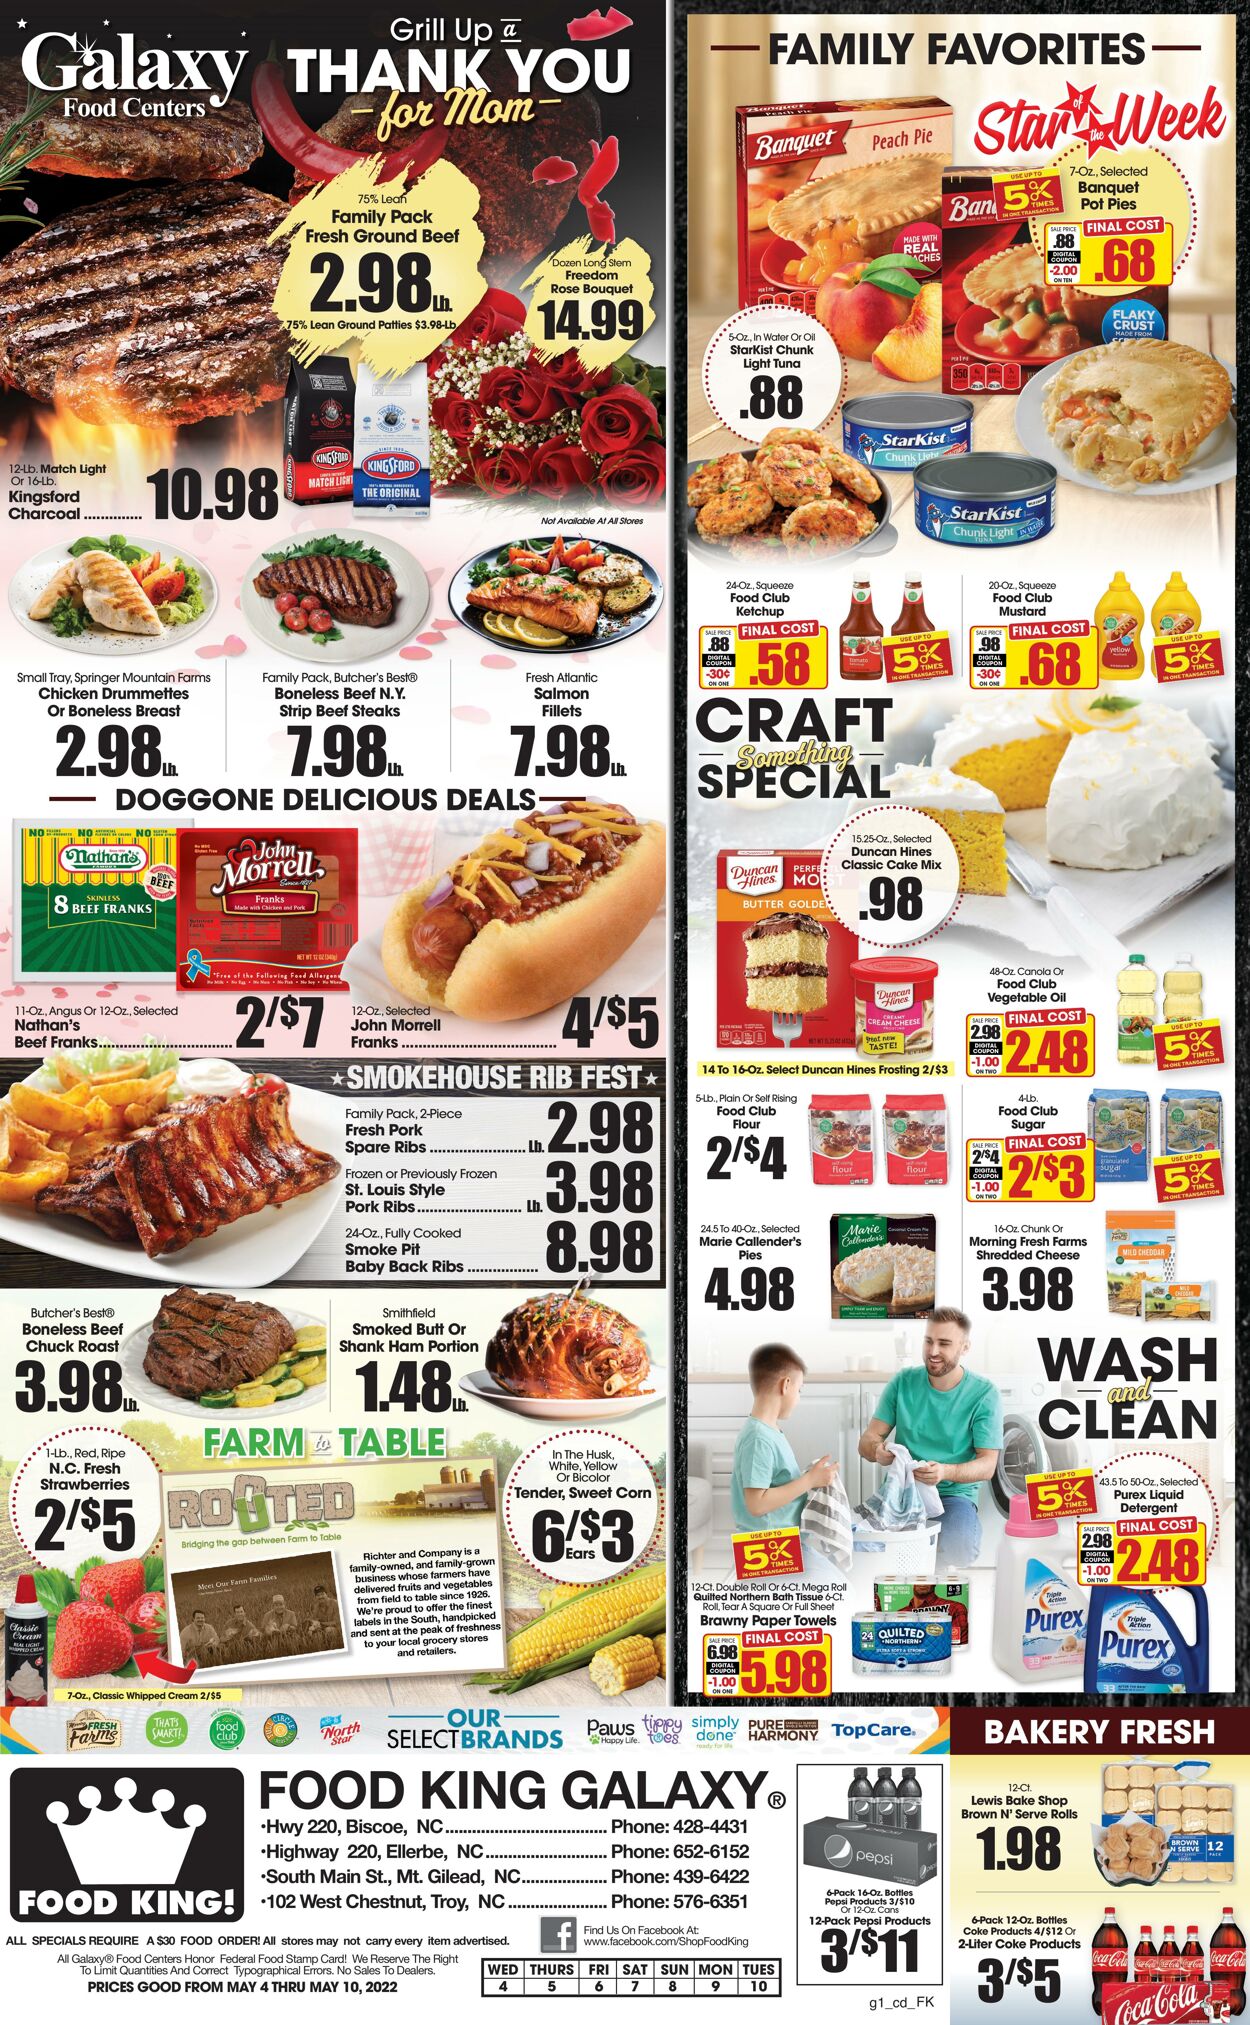 Weekly ad Food King 05/04/2022 - 05/10/2022